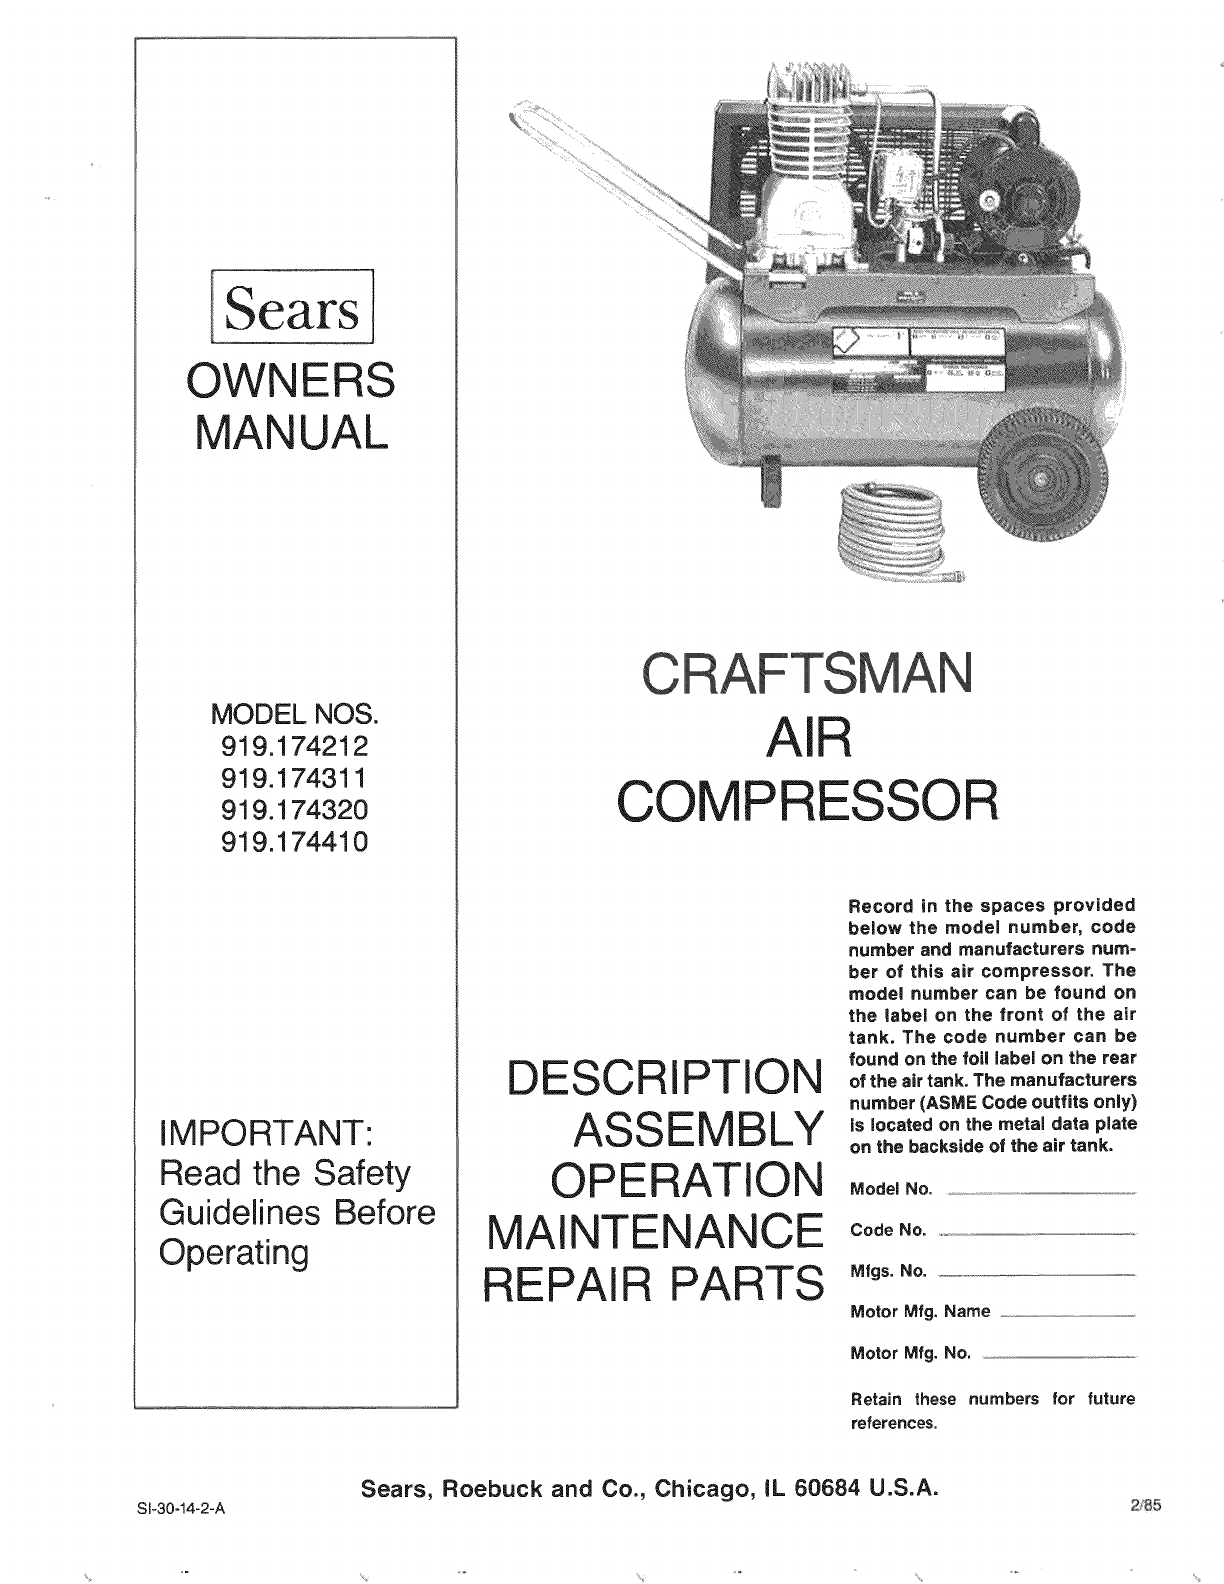 Manual Air Compressor Manuals